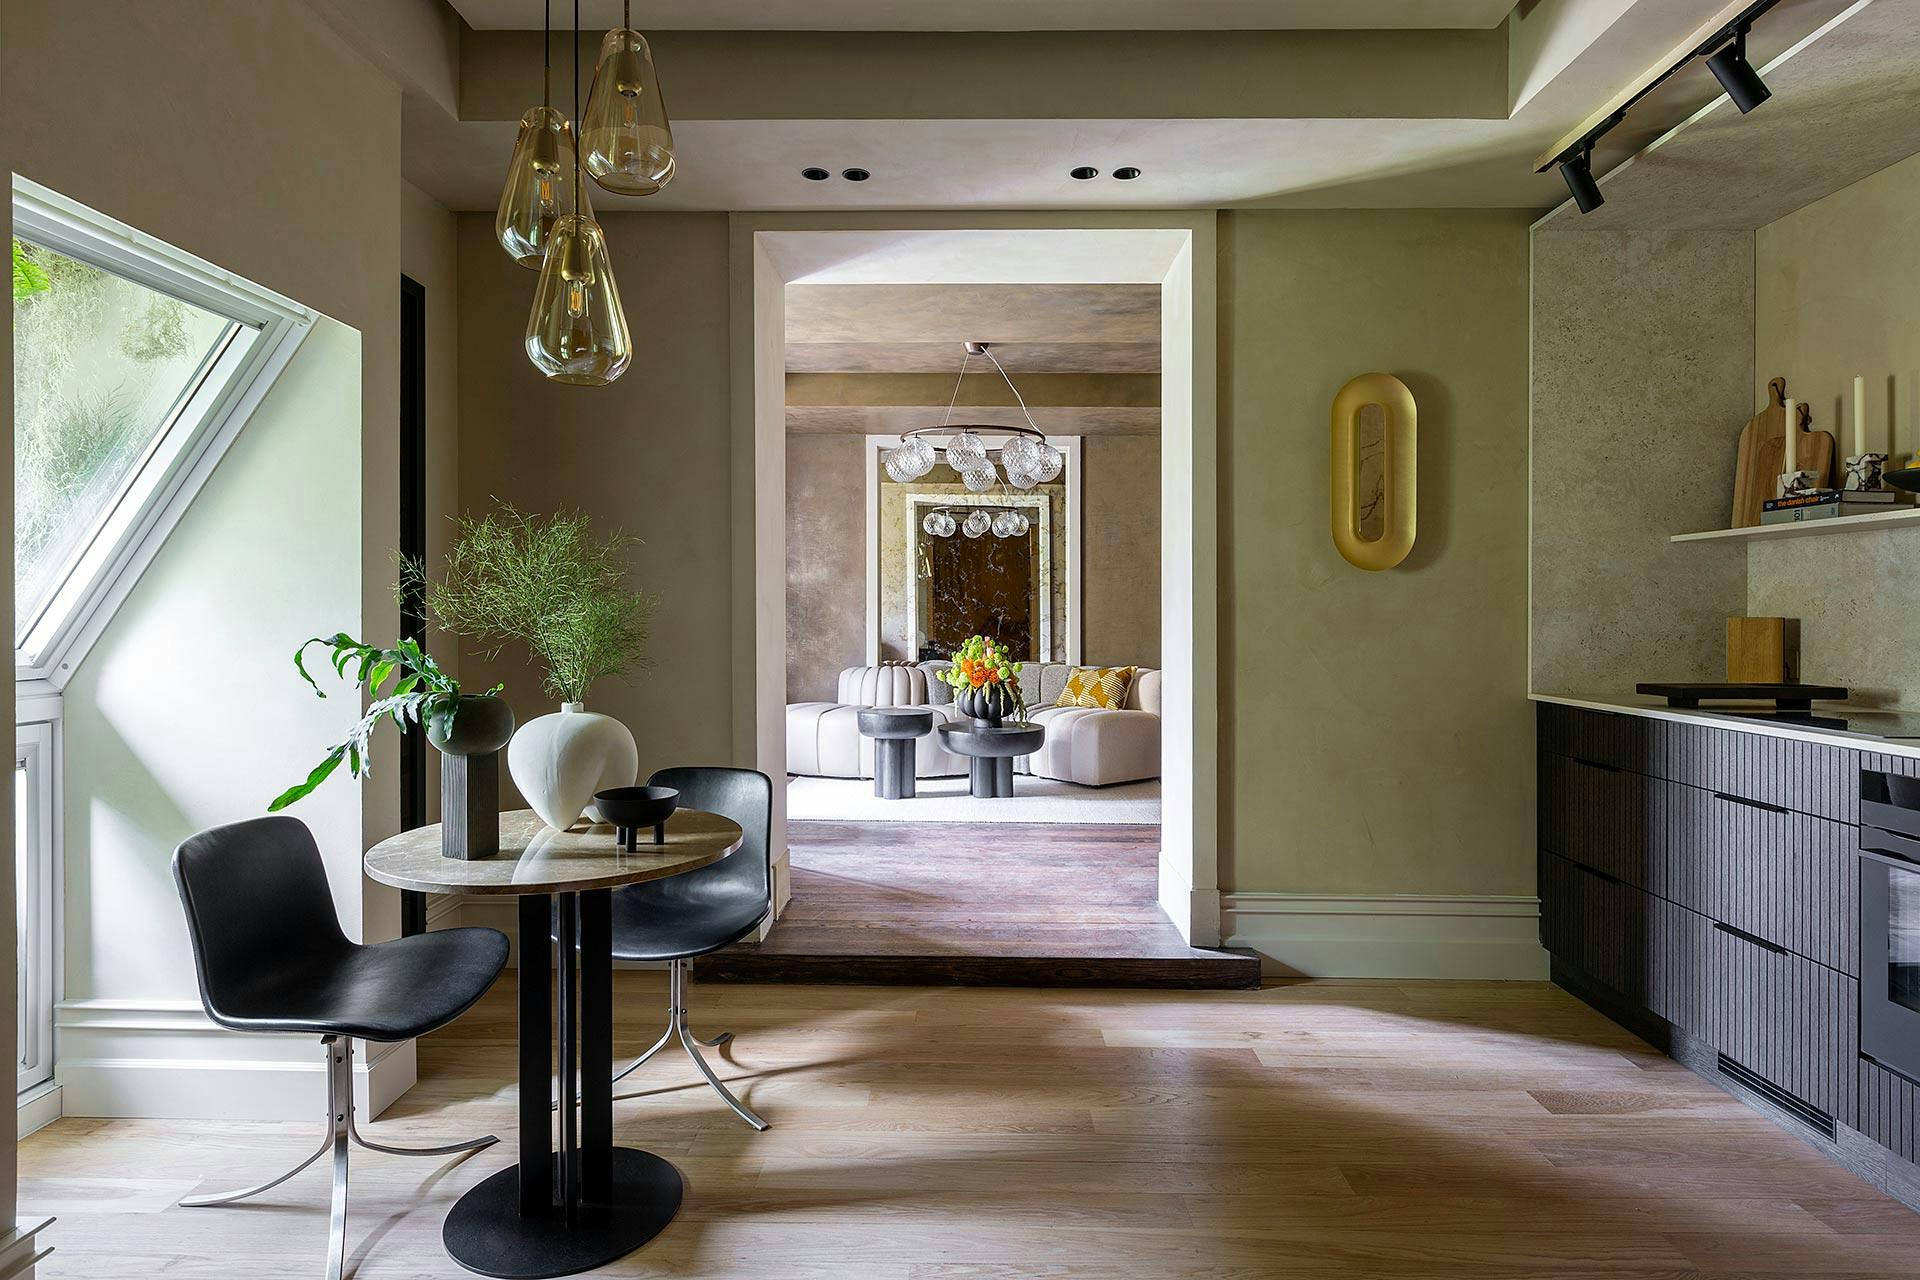 Image of casa decor 2023 salon cocina danish design comad 04.jpg?auto=format%2Ccompress&ixlib=php 3.3 in Home Cosentino - Cosentino